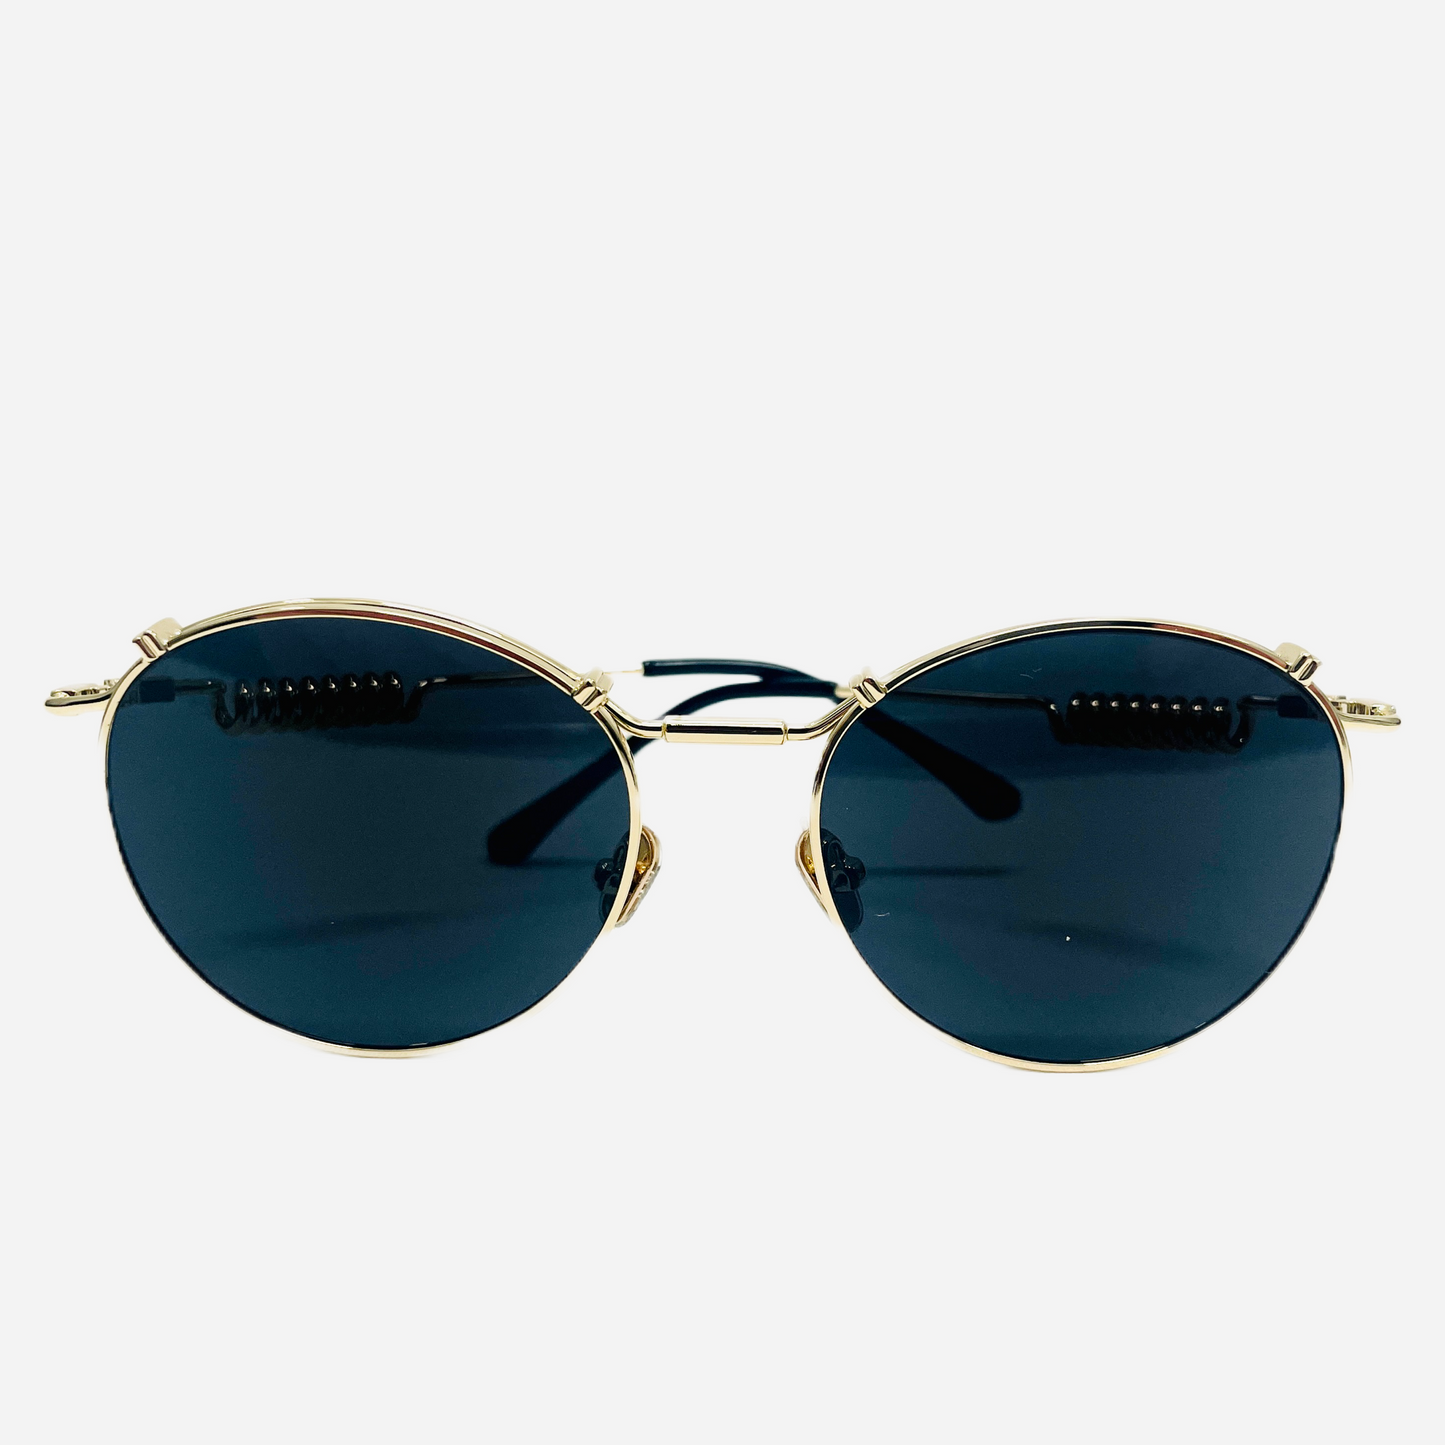 Vintage-Jean-Paul-Gaultier-Sonnenbrille-Sunglasses-Model-56-9174-gold